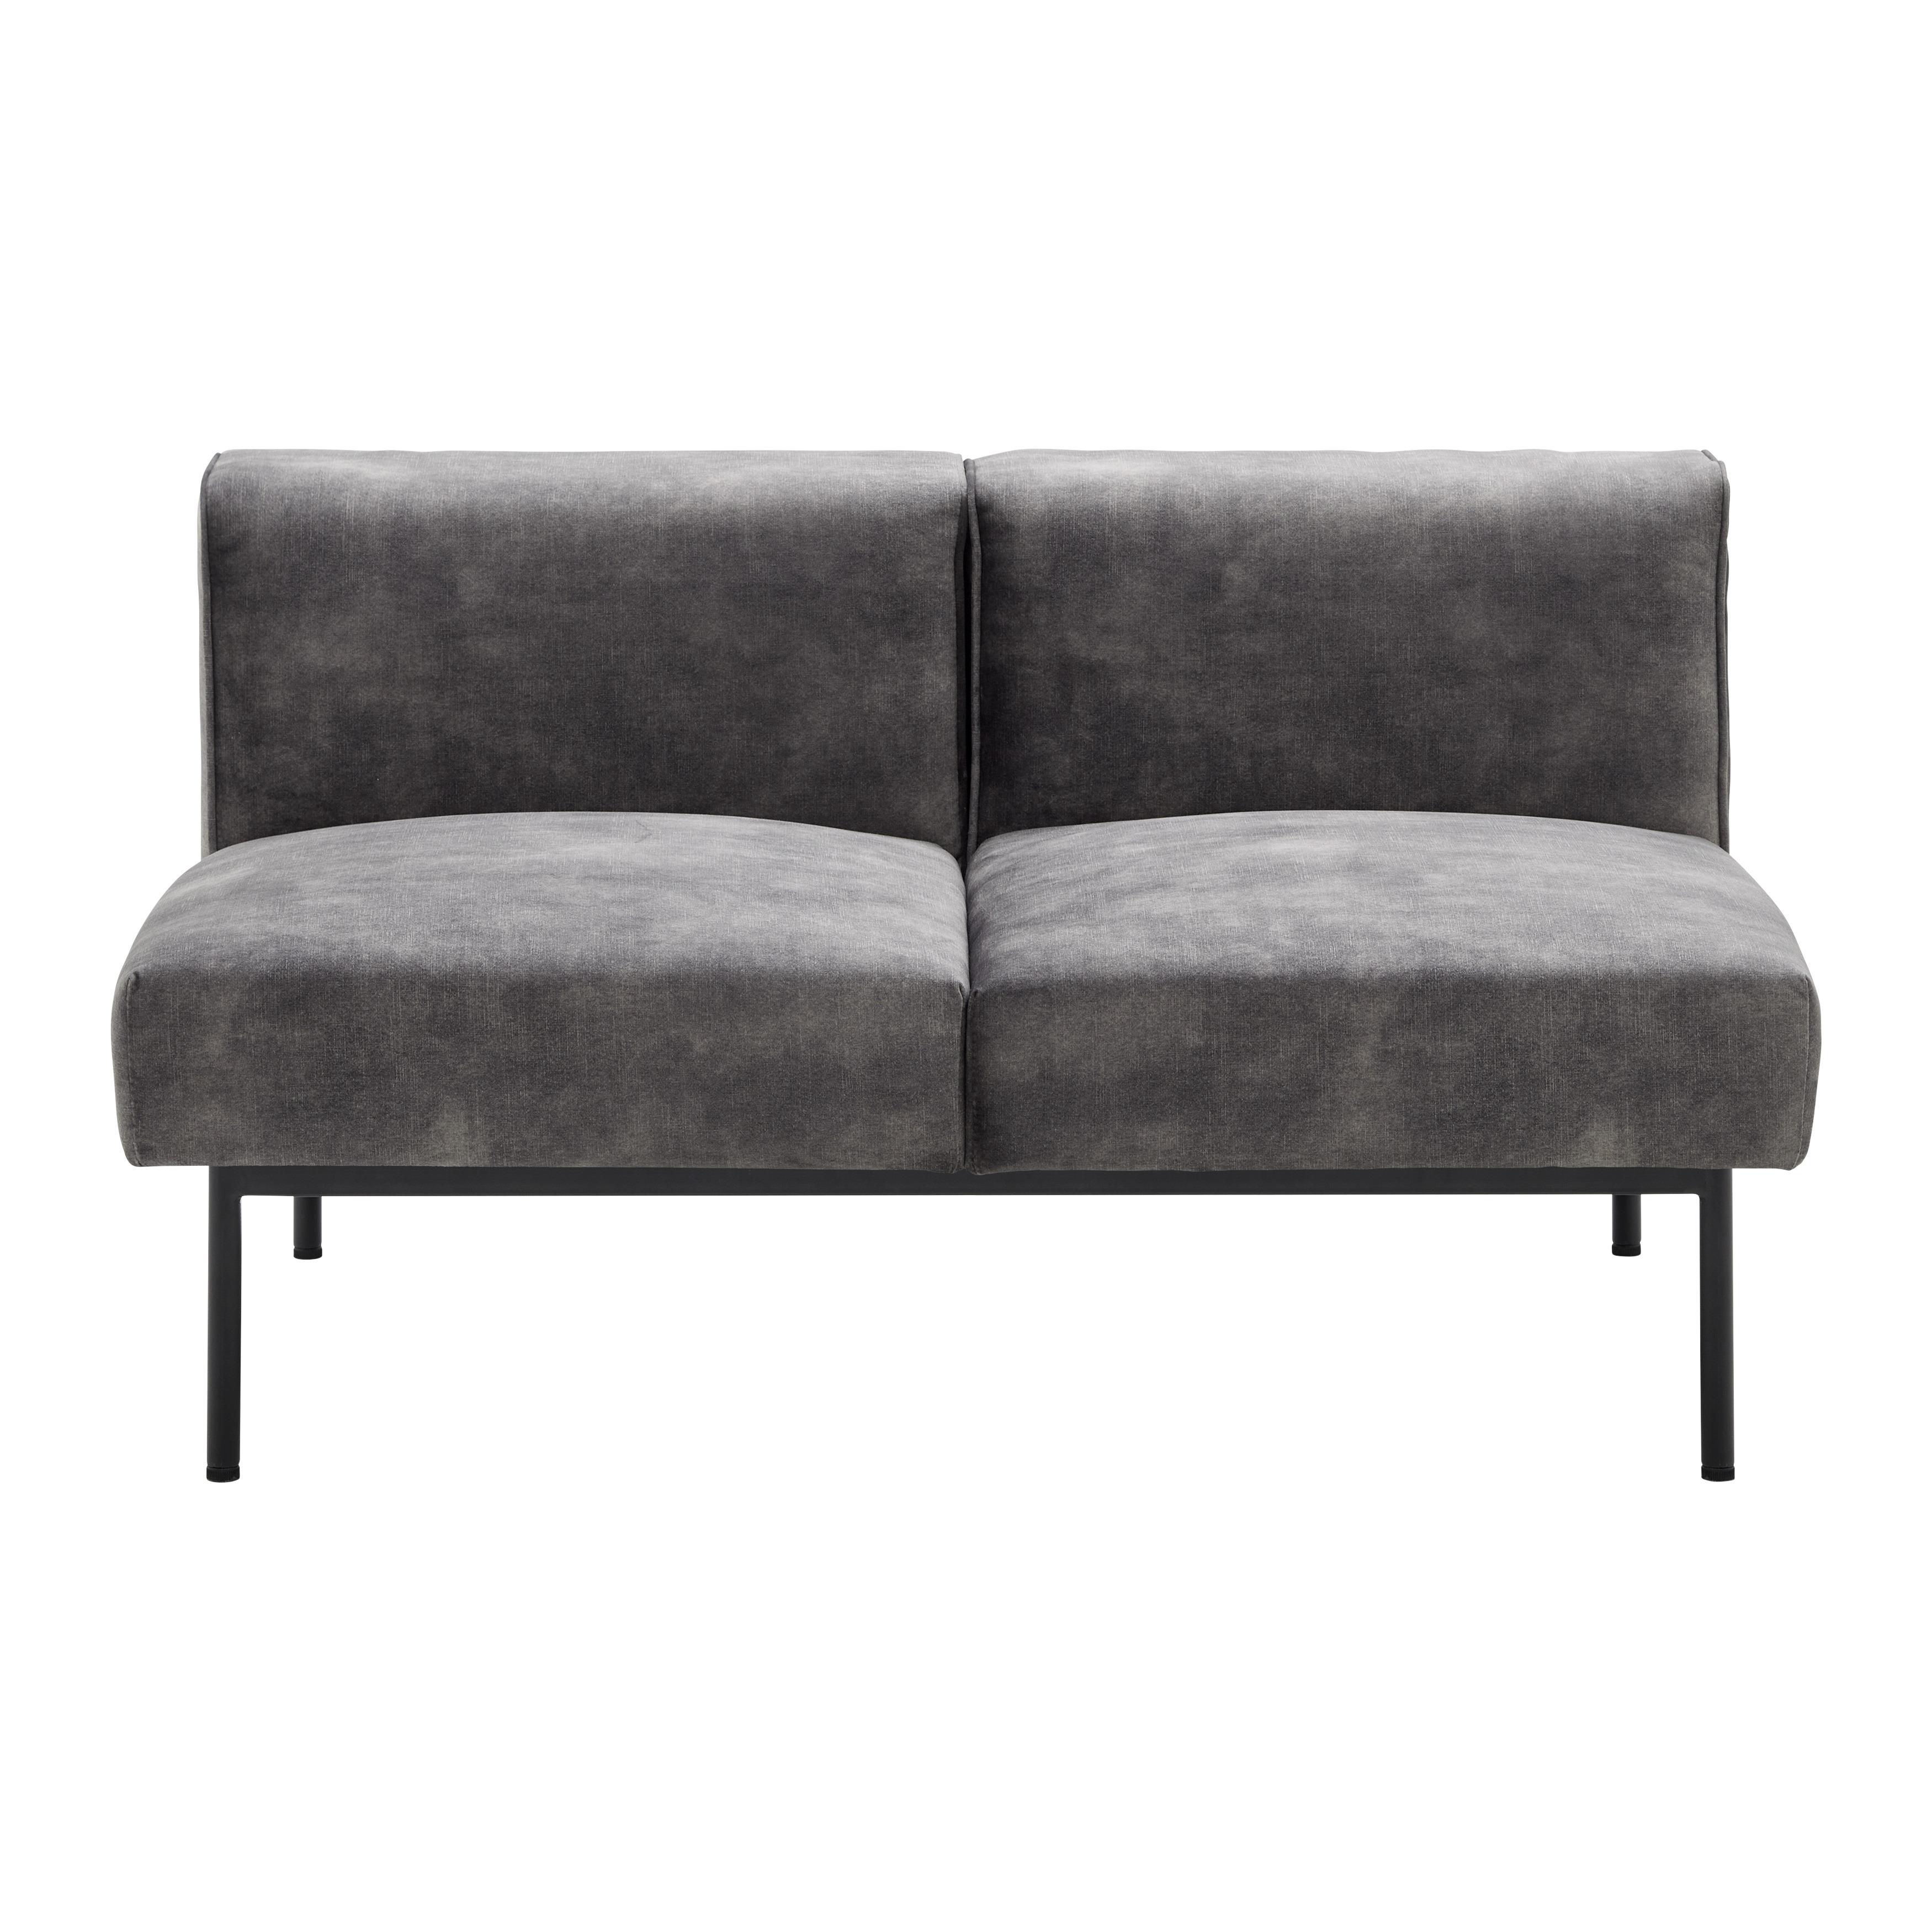 Modulares Sofa "Modu", Mittelteil, dunkelgrau, Samt - Dunkelgrau/Schwarz, MODERN, Holz/Textil (117/76/63cm) - Bessagi Home